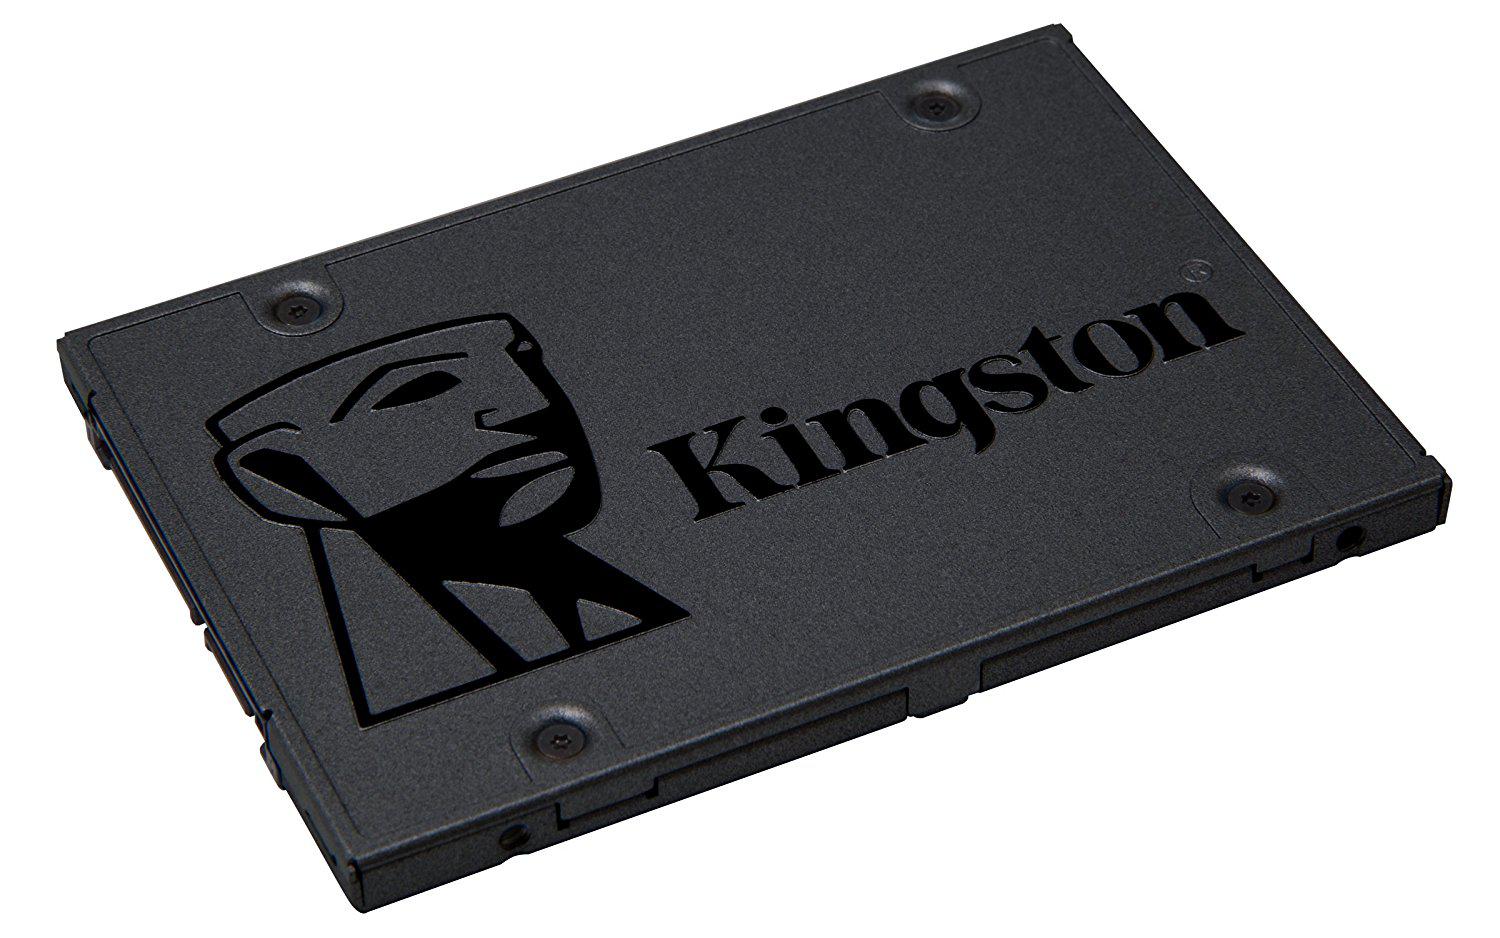 SSD KINGSTON A400, 120GB, 2.5", SATA III